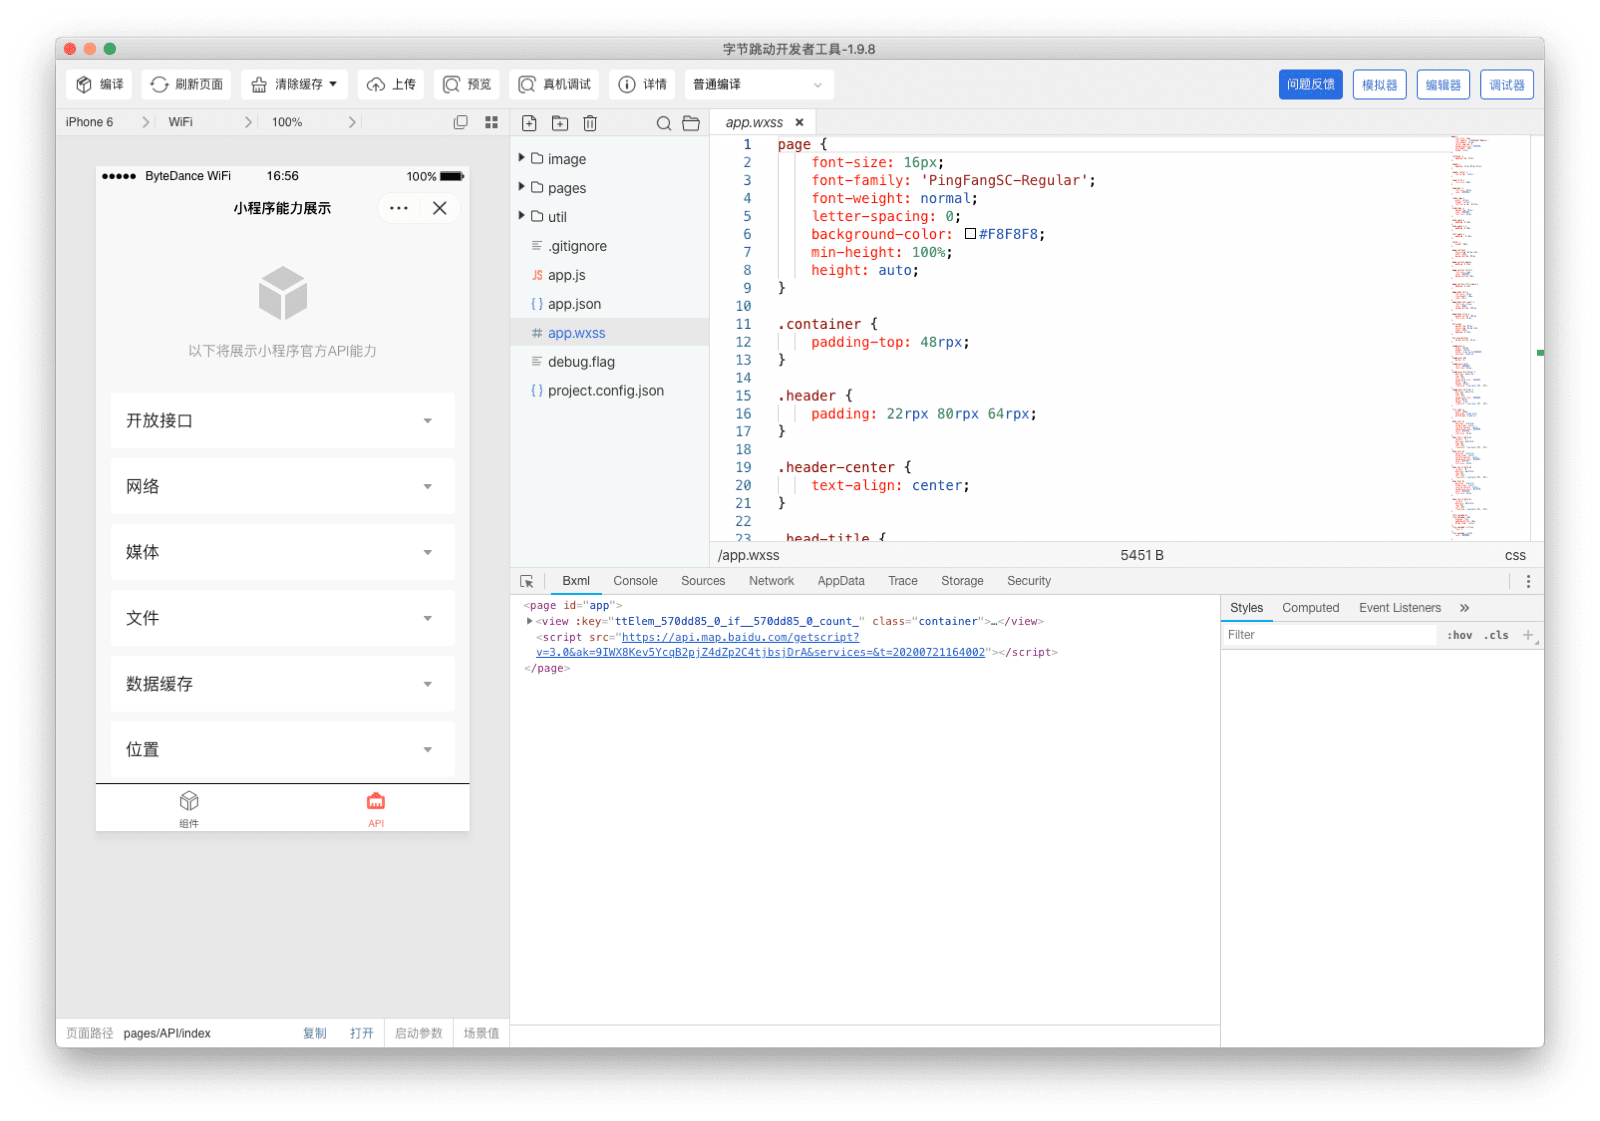 پنجره برنامه ByteDance DevTools که شبیه ساز، ویرایشگر کد و دیباگر را نشان می دهد.